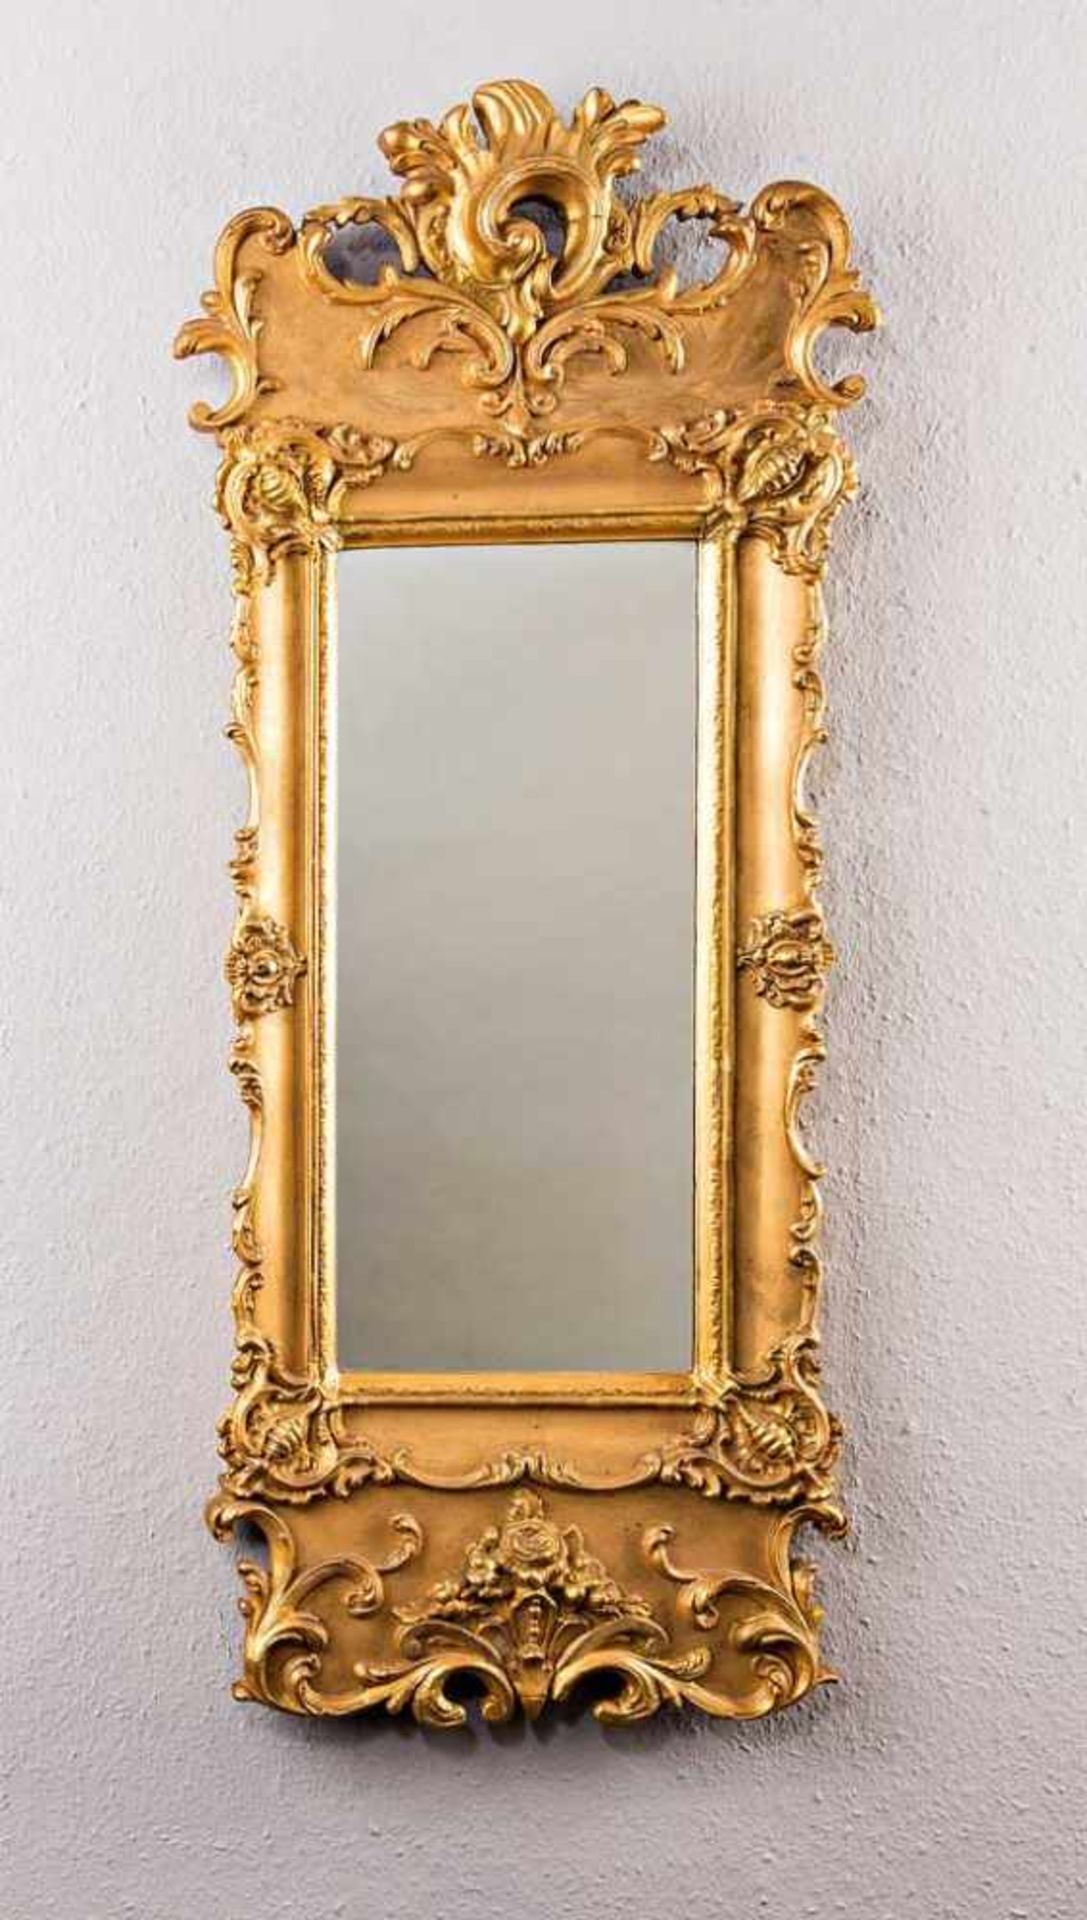 Pfeilerspiegel im Barockstil. Vergoldet. 19. Jh. H 120 cm